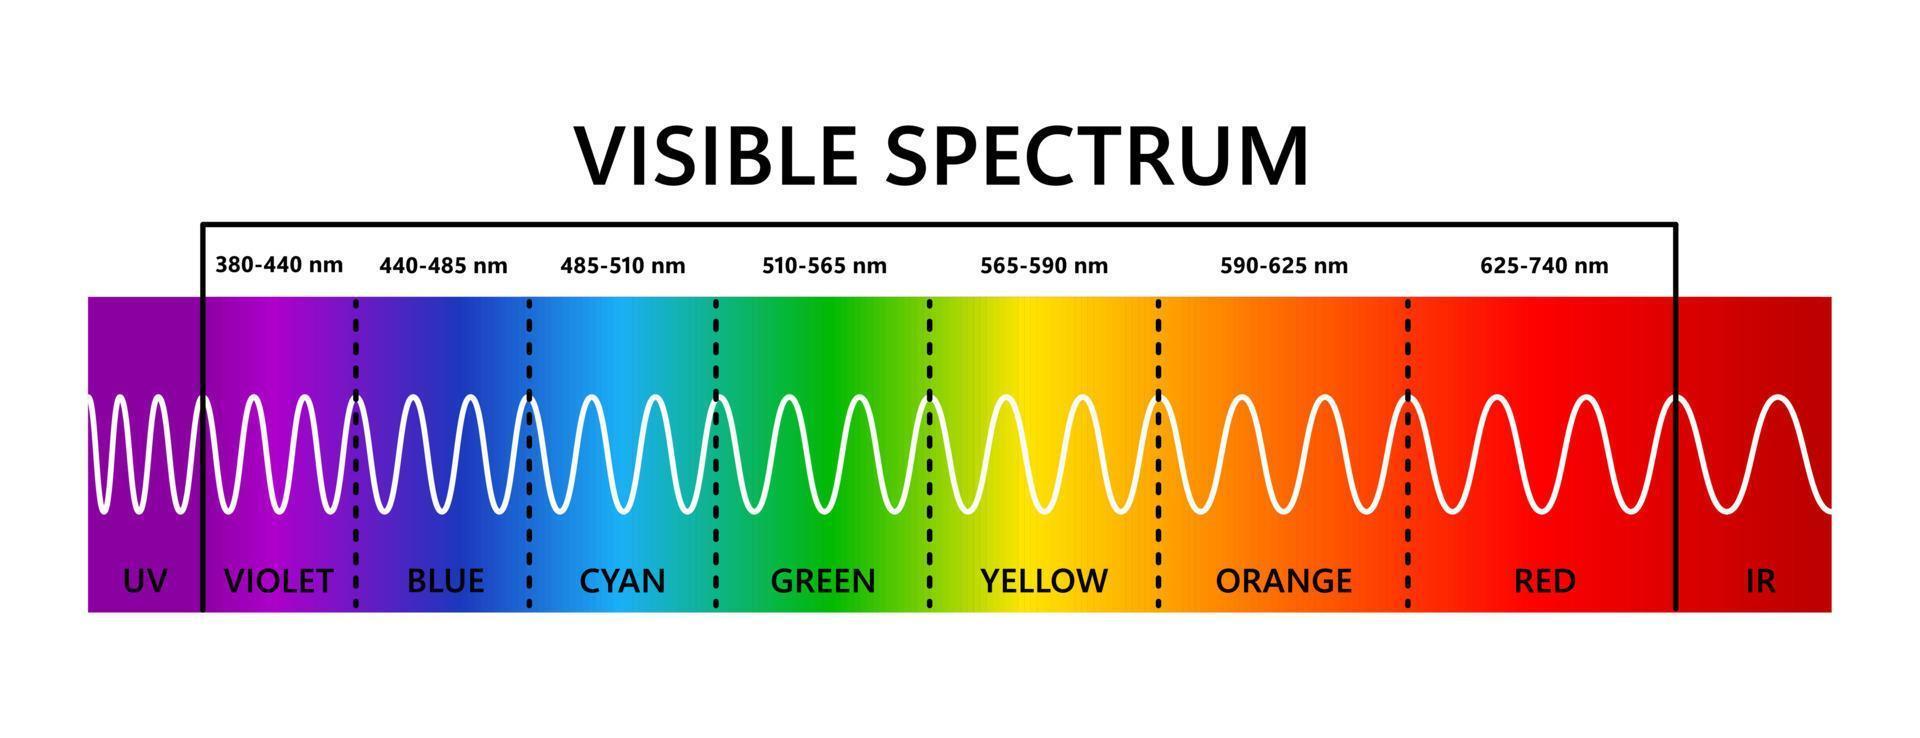 spectre de la lumière visible, infrarouge et ultraviolet. longueur d'onde de la lumière optique. spectre de couleurs visible électromagnétique pour l'œil humain. diagramme de gradient. illustration vectorielle éducative sur fond blanc vecteur